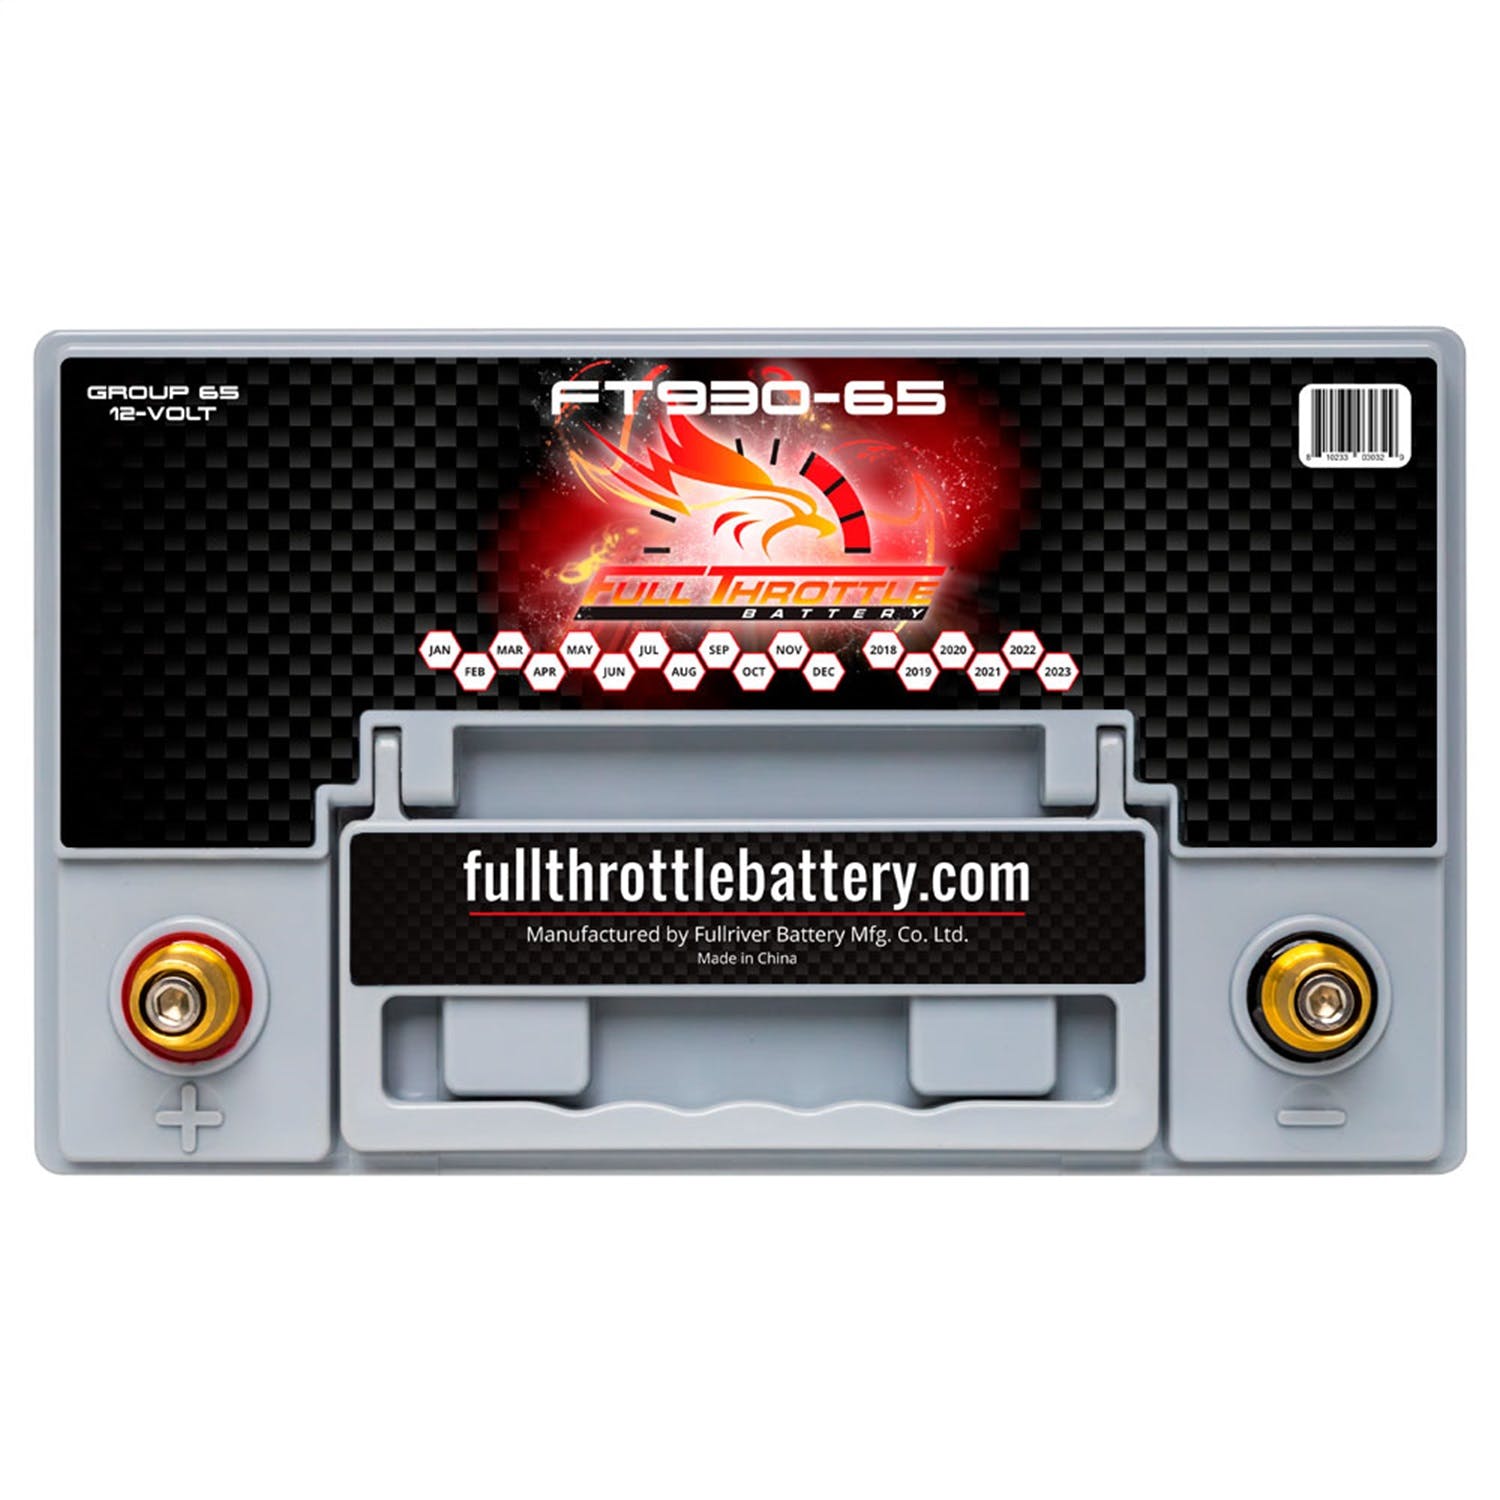 Fullriver Battery FT930-65 Full Throttle 12V Automotive Battery